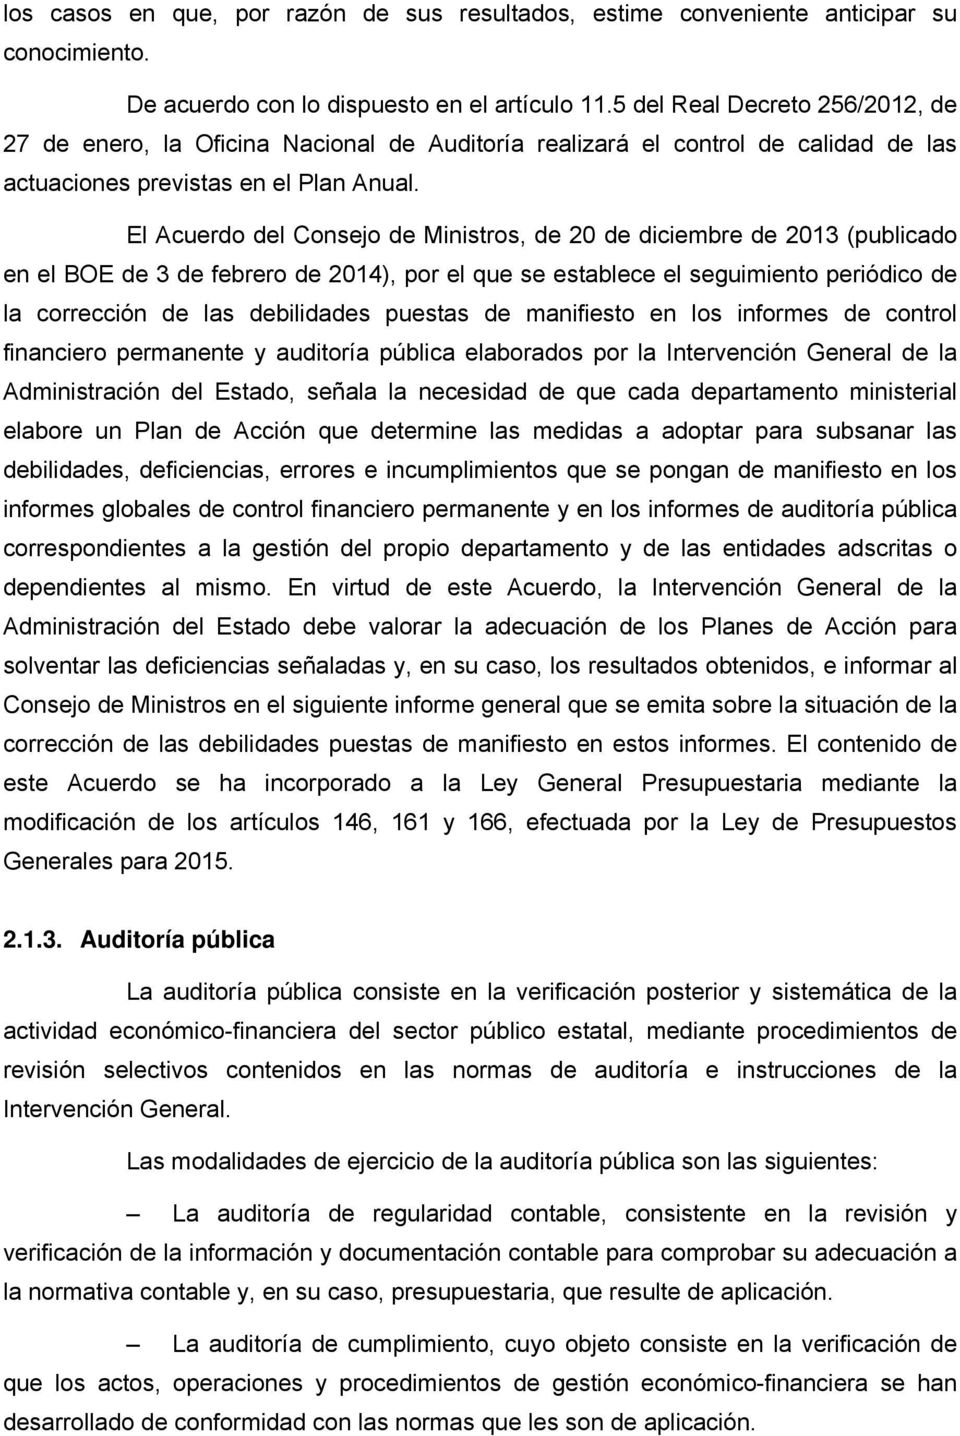 El Acuerdo del Consejo de Ministros, de 20 de diciembre de 2013 (publicado en el BOE de 3 de febrero de 2014), por el que se establece el seguimiento periódico de la corrección de las debilidades